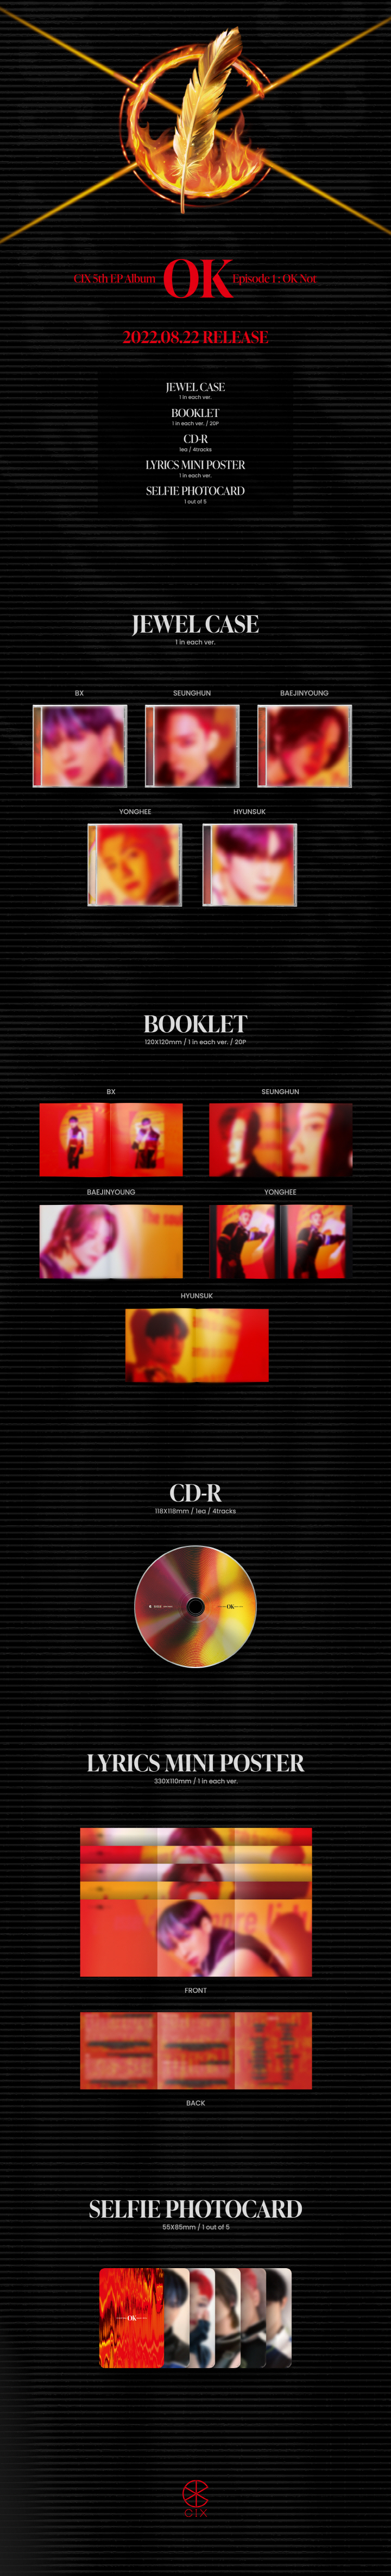 CIX - 5th EP ALBUM [OK Episode 1 OK Not] Yonghee ver